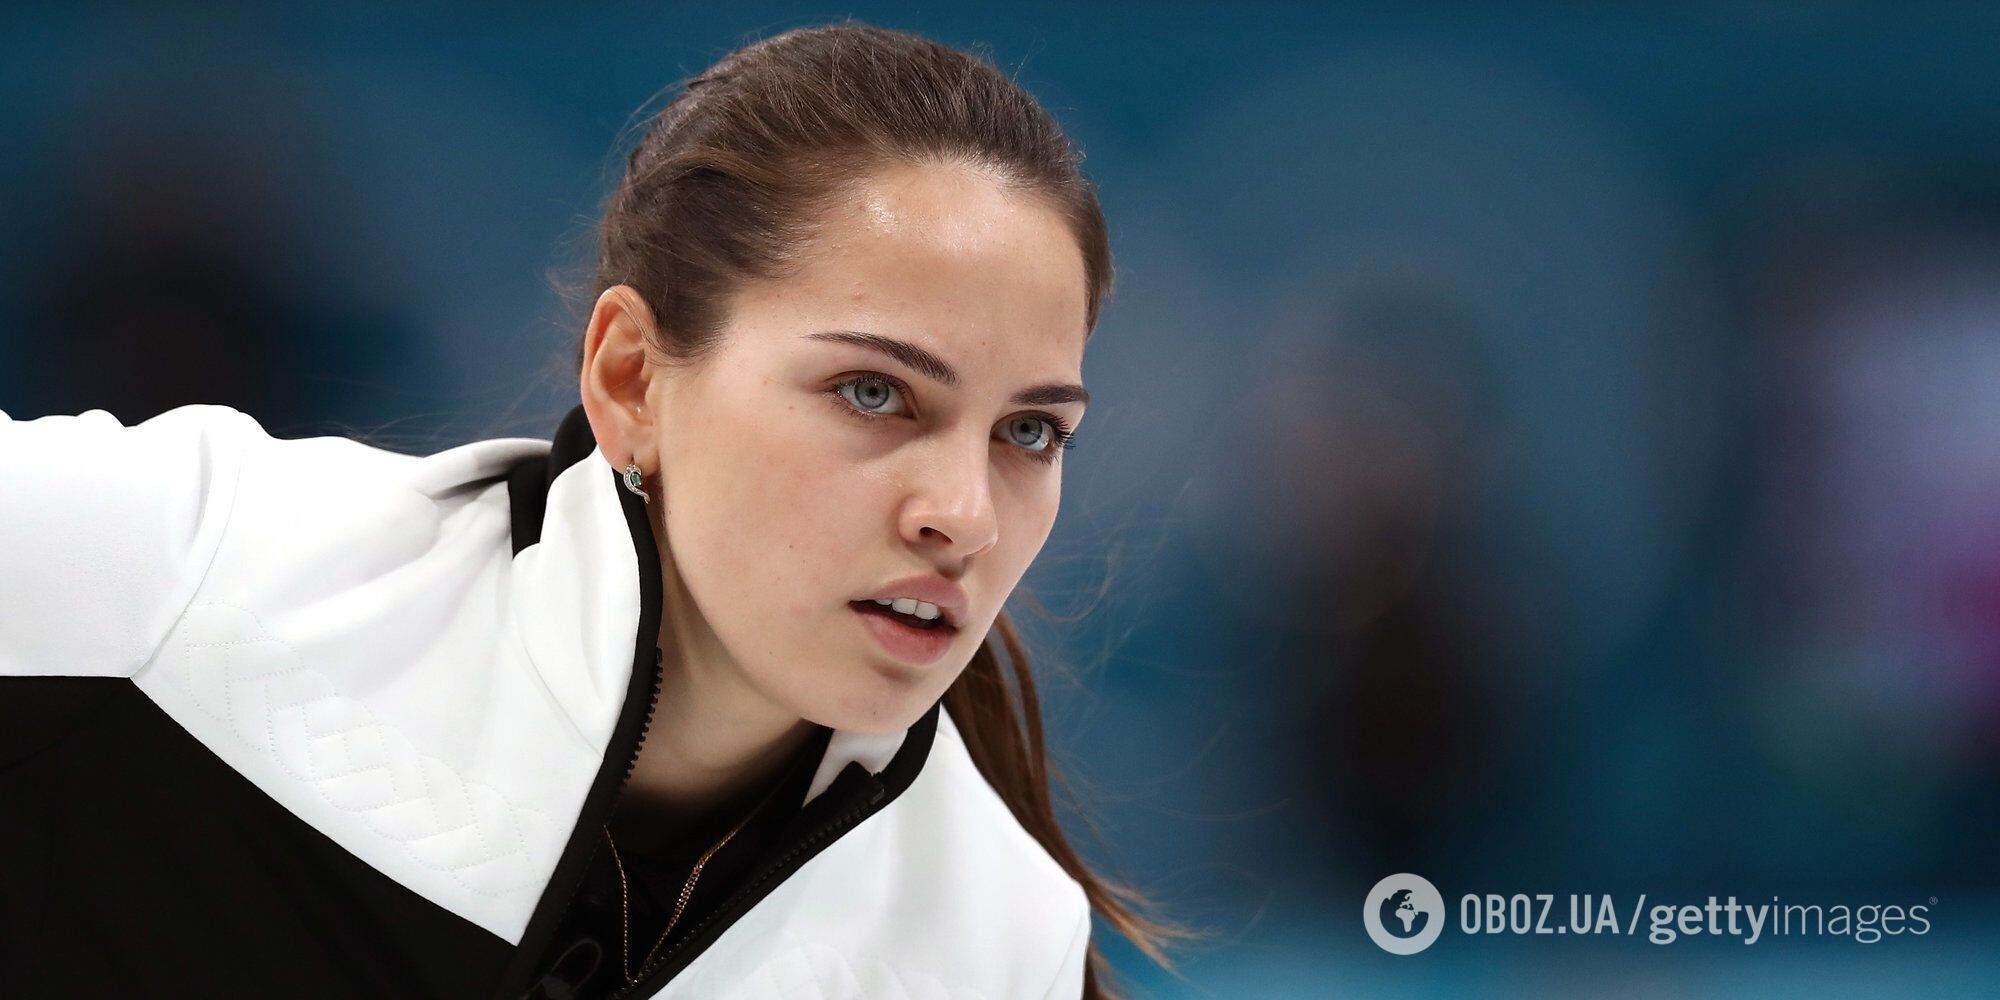 "Якесь знущання": чемпіонка світу з РФ назвала повною маячнею осуд війни в Україні на вимогу МОК